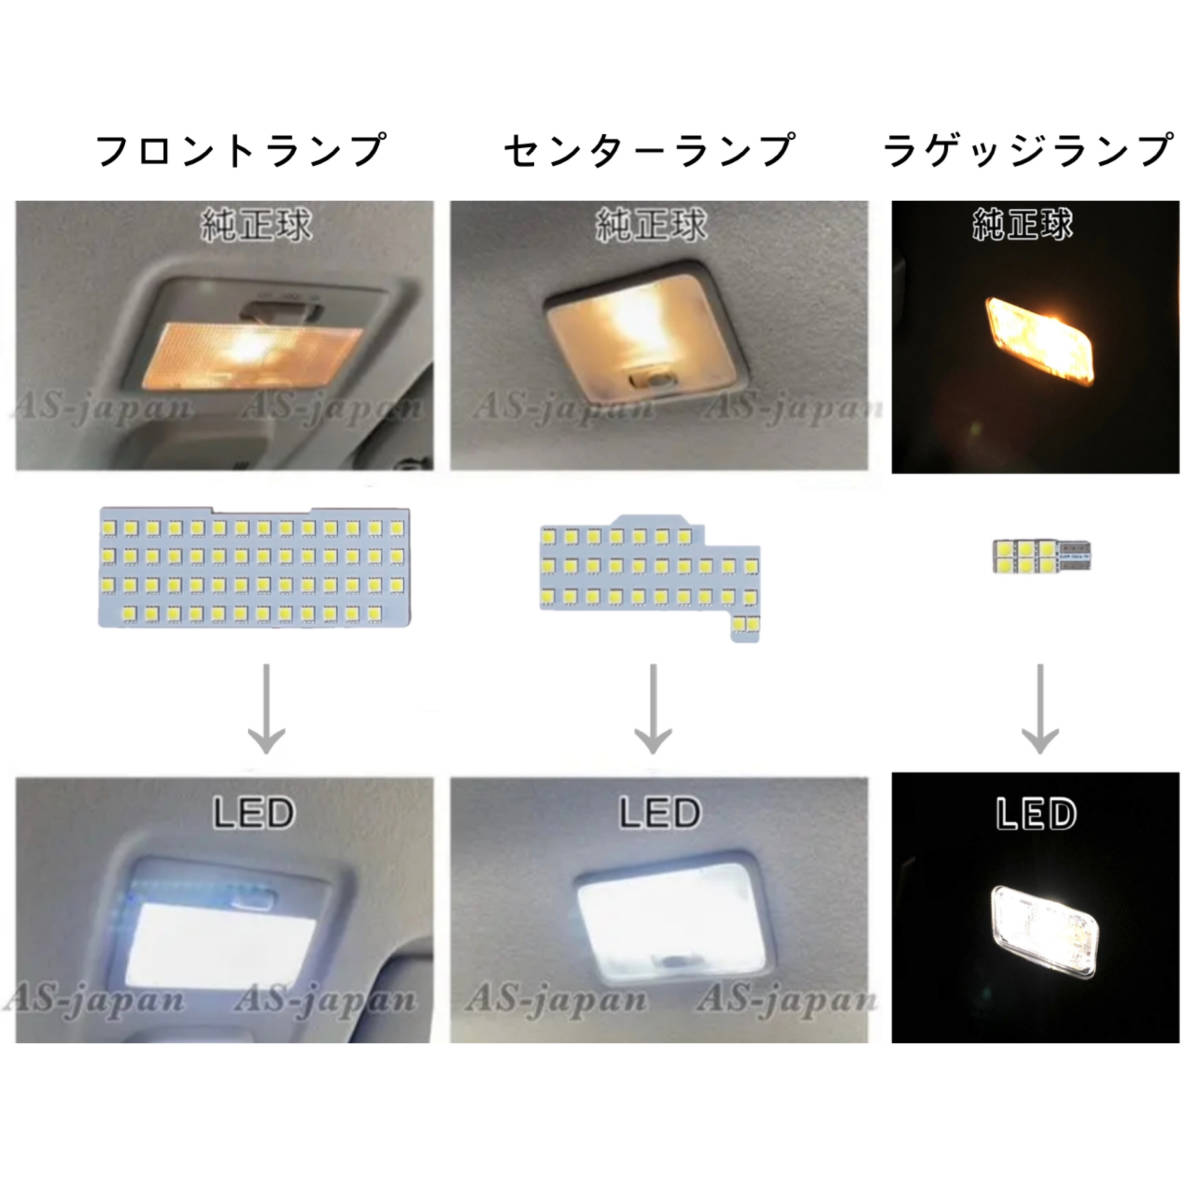 スズキ スペーシア / スペーシアカスタム [ MK53S ] 専用設計 LED ルームランプ 純白光 高輝度 SMD 2017(H29)年12月〜の画像6